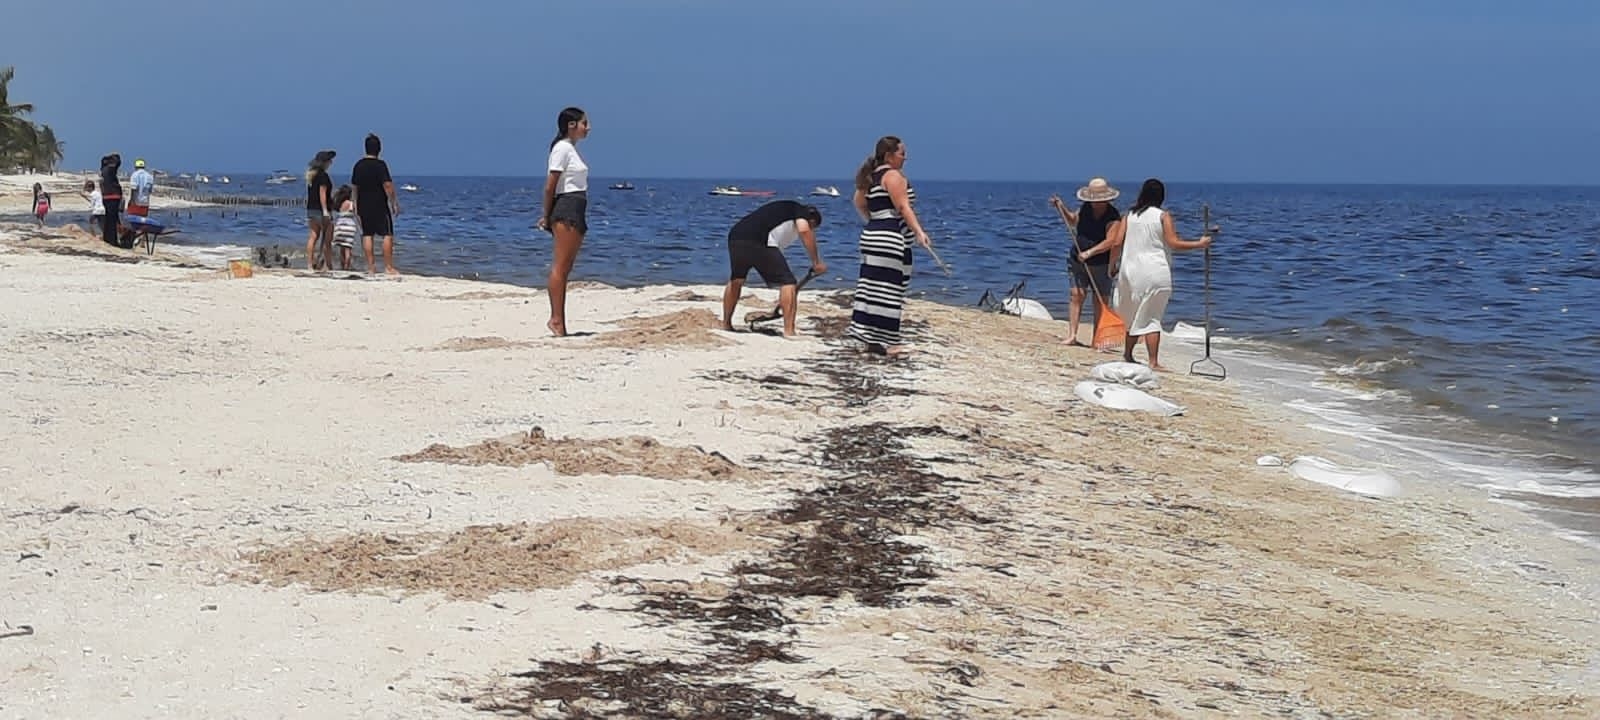 Ejército, voluntarios y personal del Gobierno de Yucatán se unen para limpiar playas afectadas por marea roja